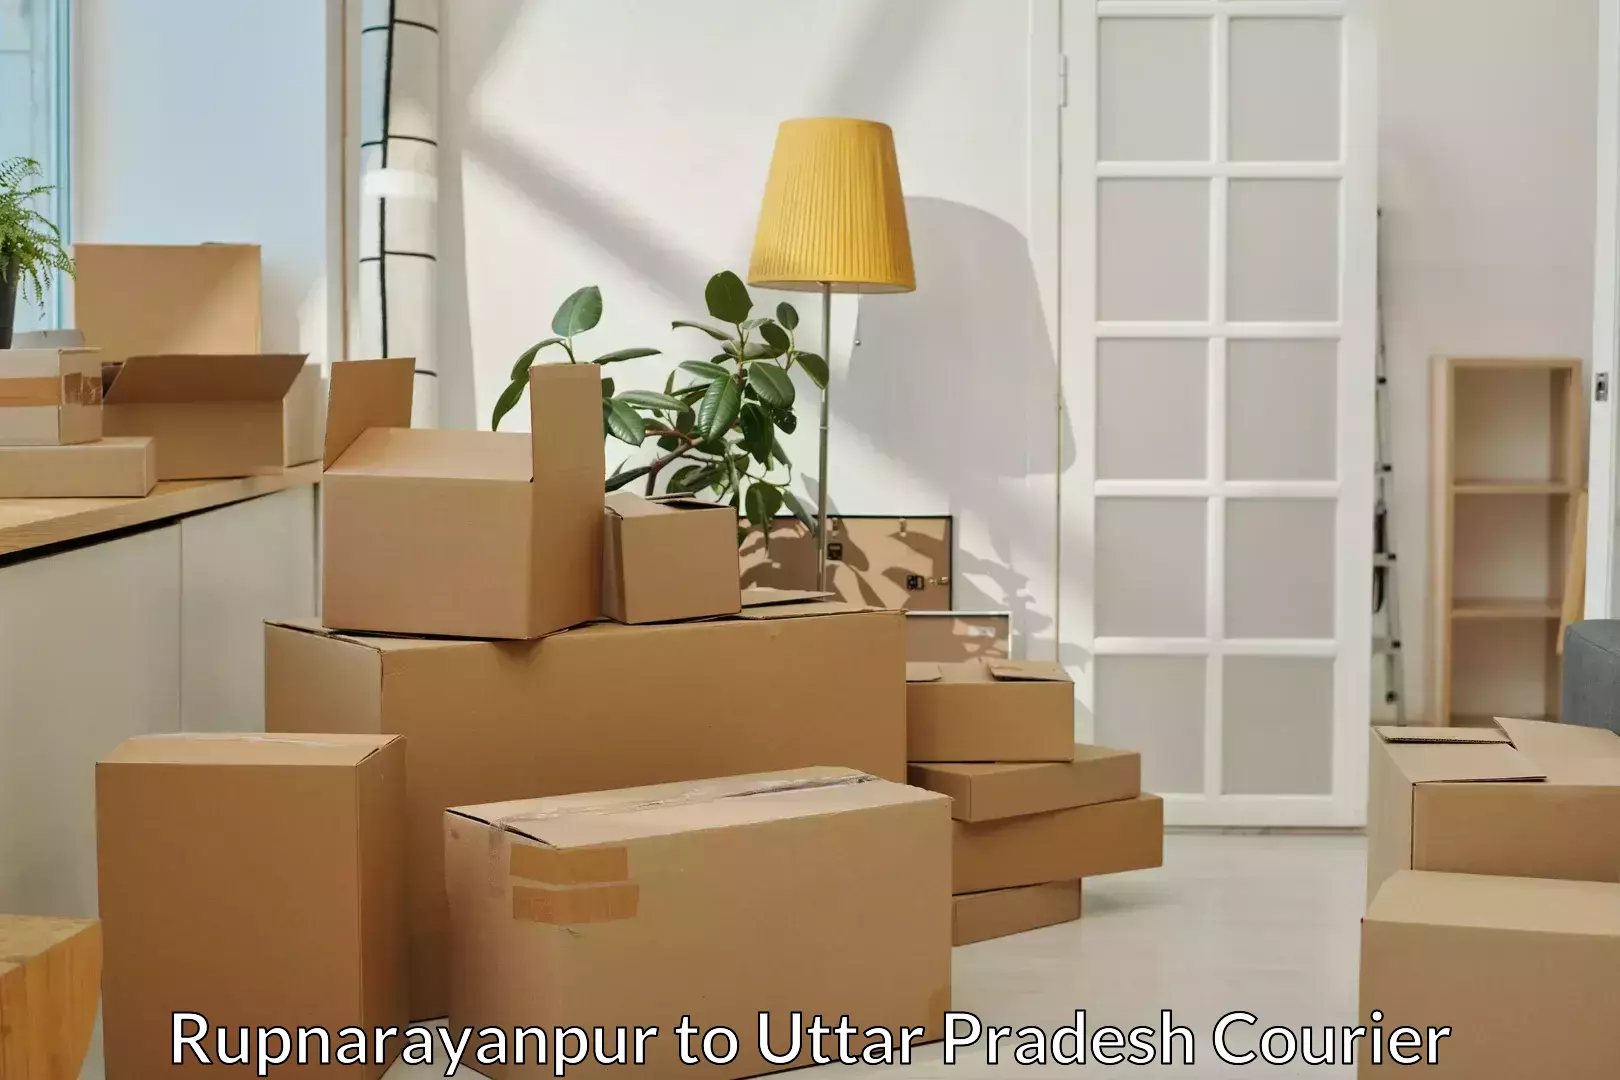 Furniture delivery service Rupnarayanpur to Hamirpur Uttar Pradesh